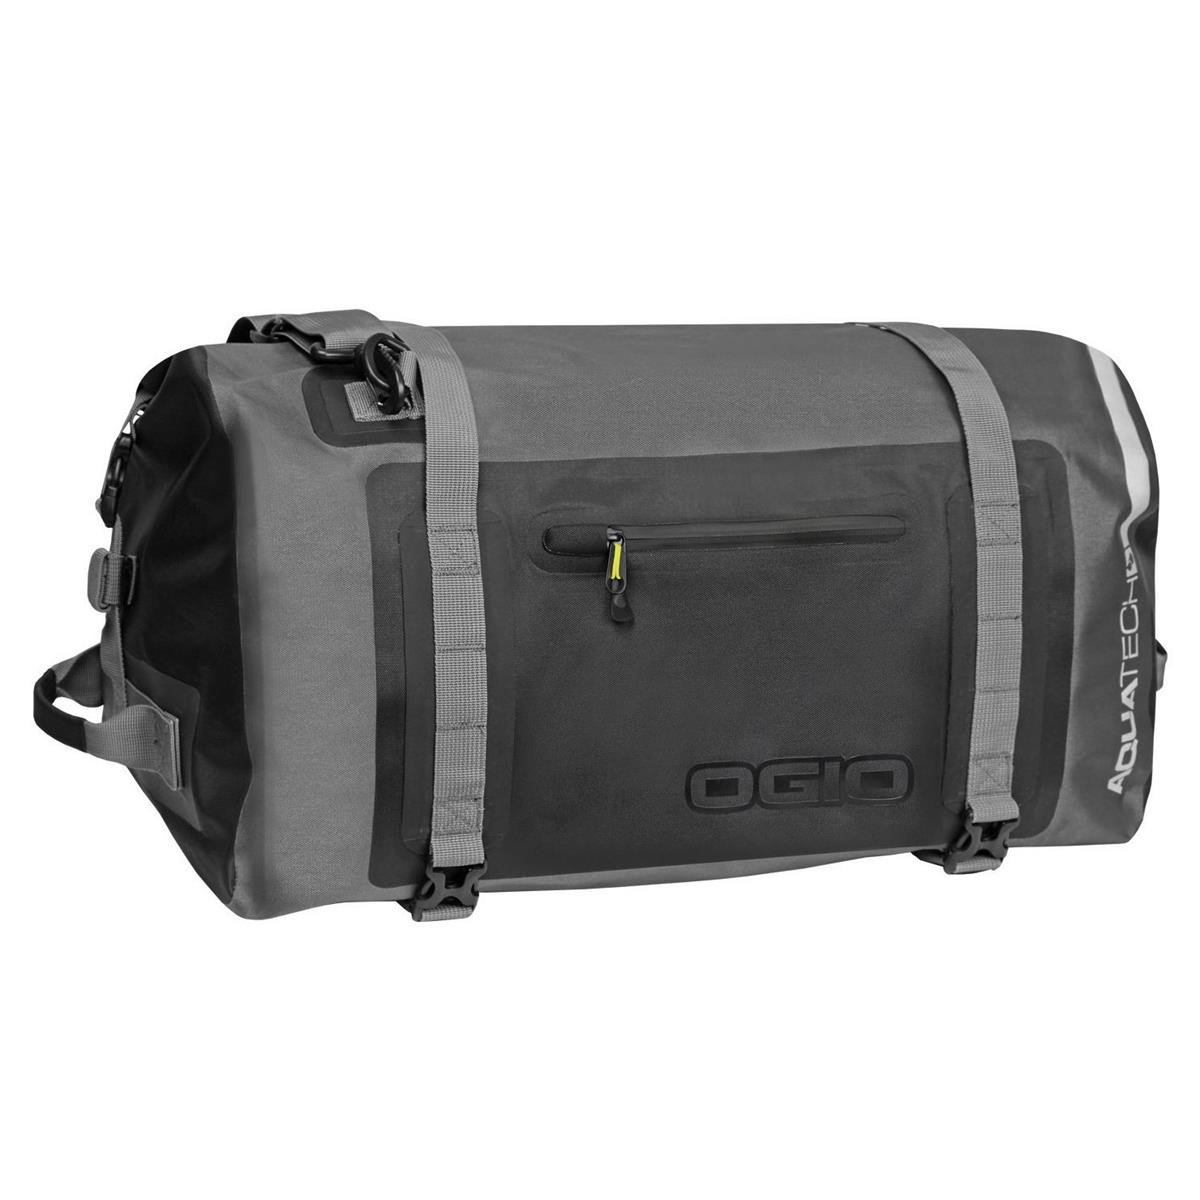 Ogio Travel Bag All Elements 3.0 Stealth, 41 Liter